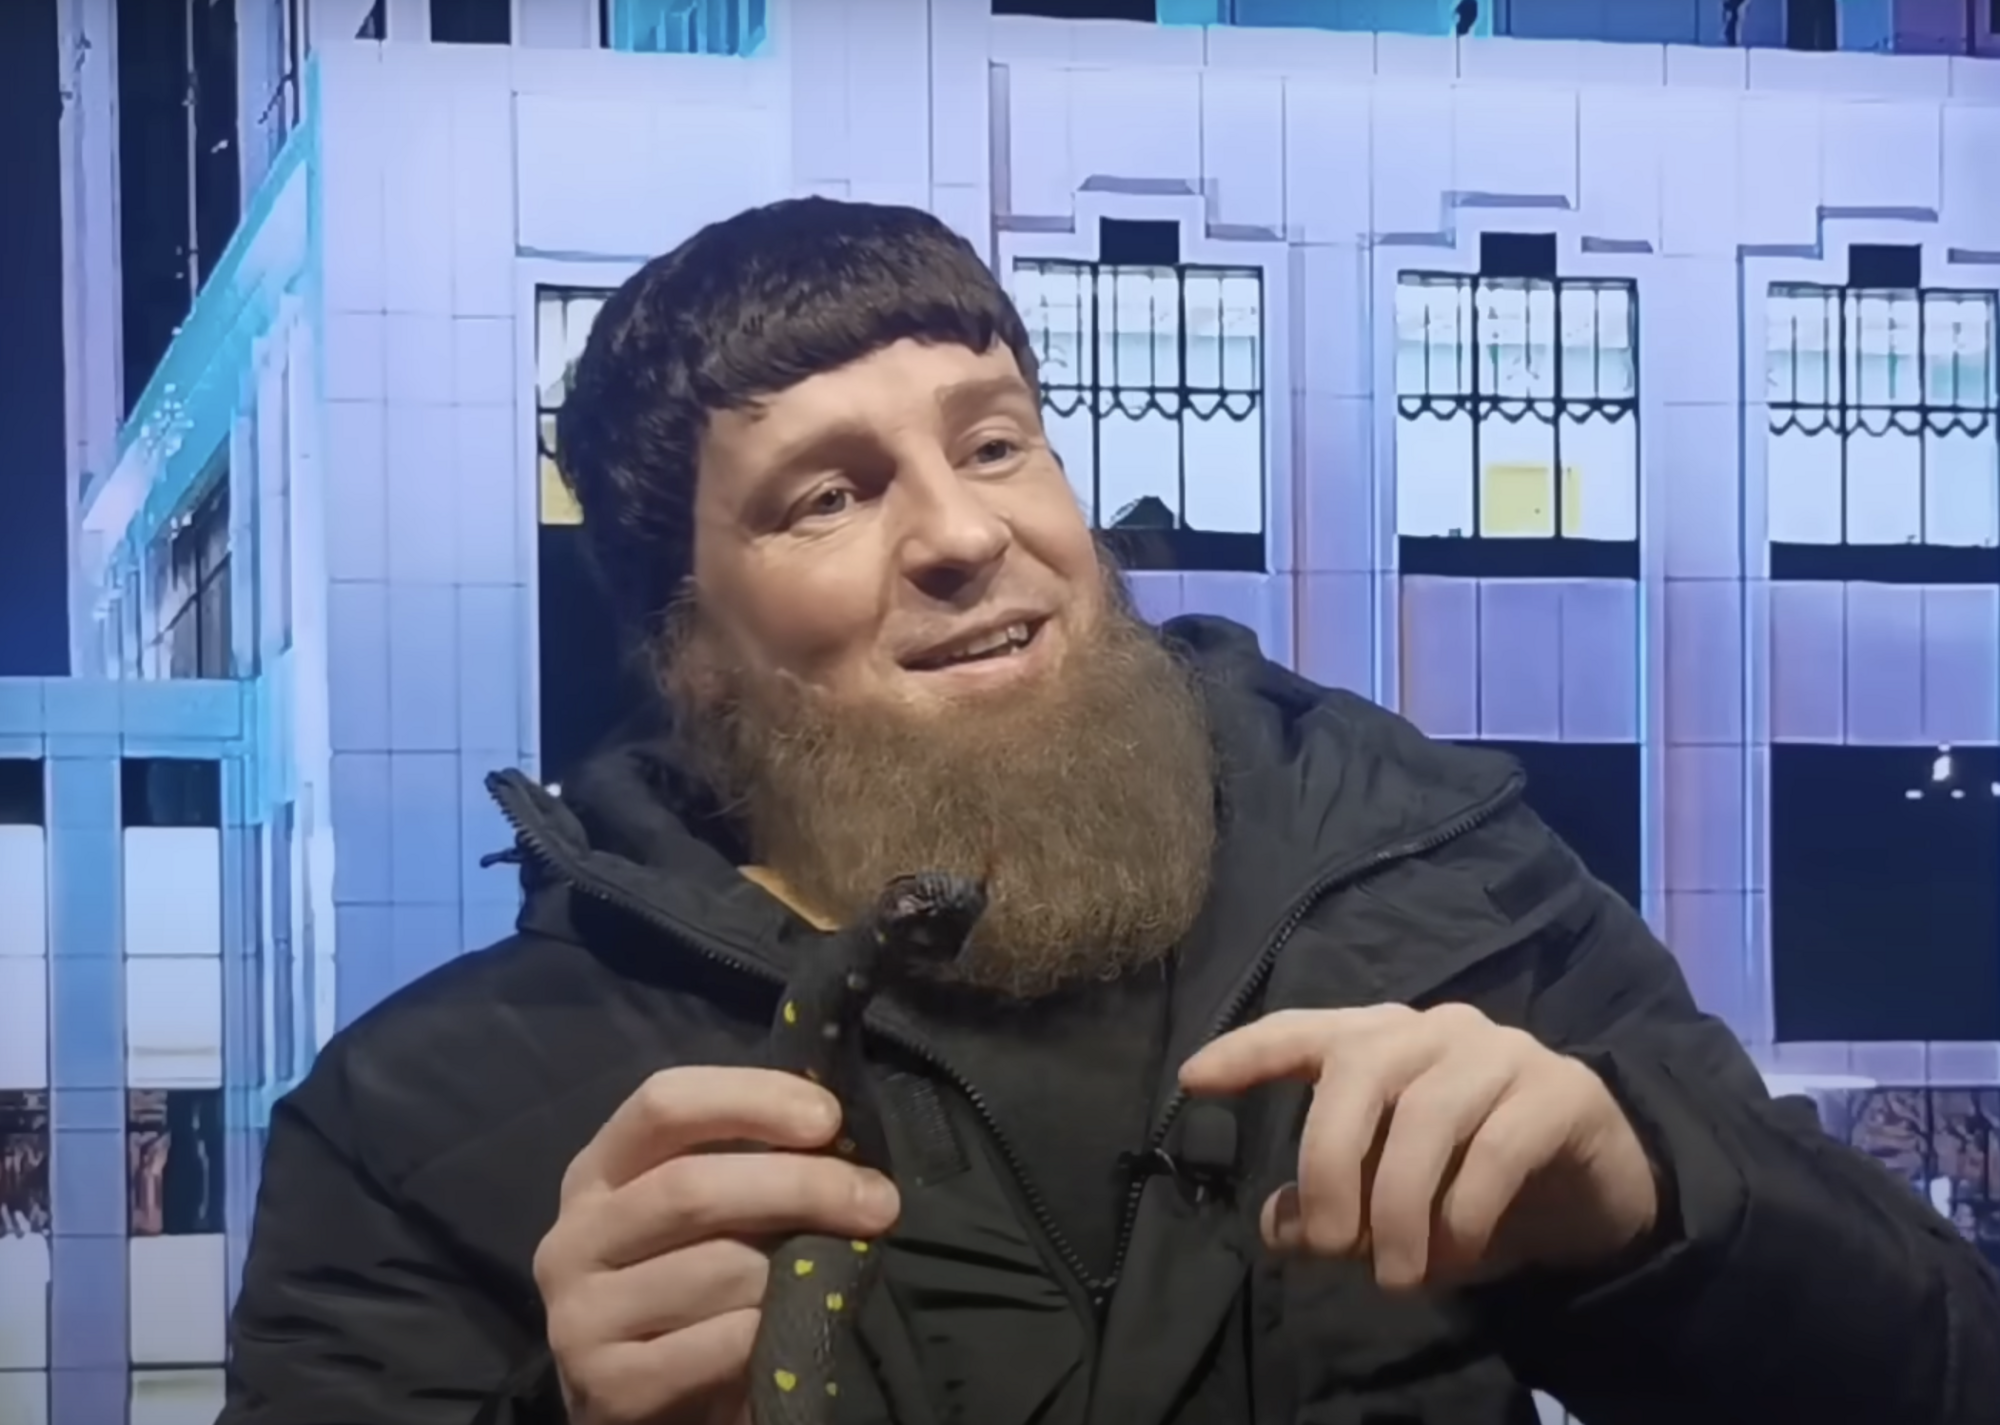 Звезда "Квартала" в образе Кадырова с трофейным пистолетом собрал посылку Зеленскому для "достойного шага"